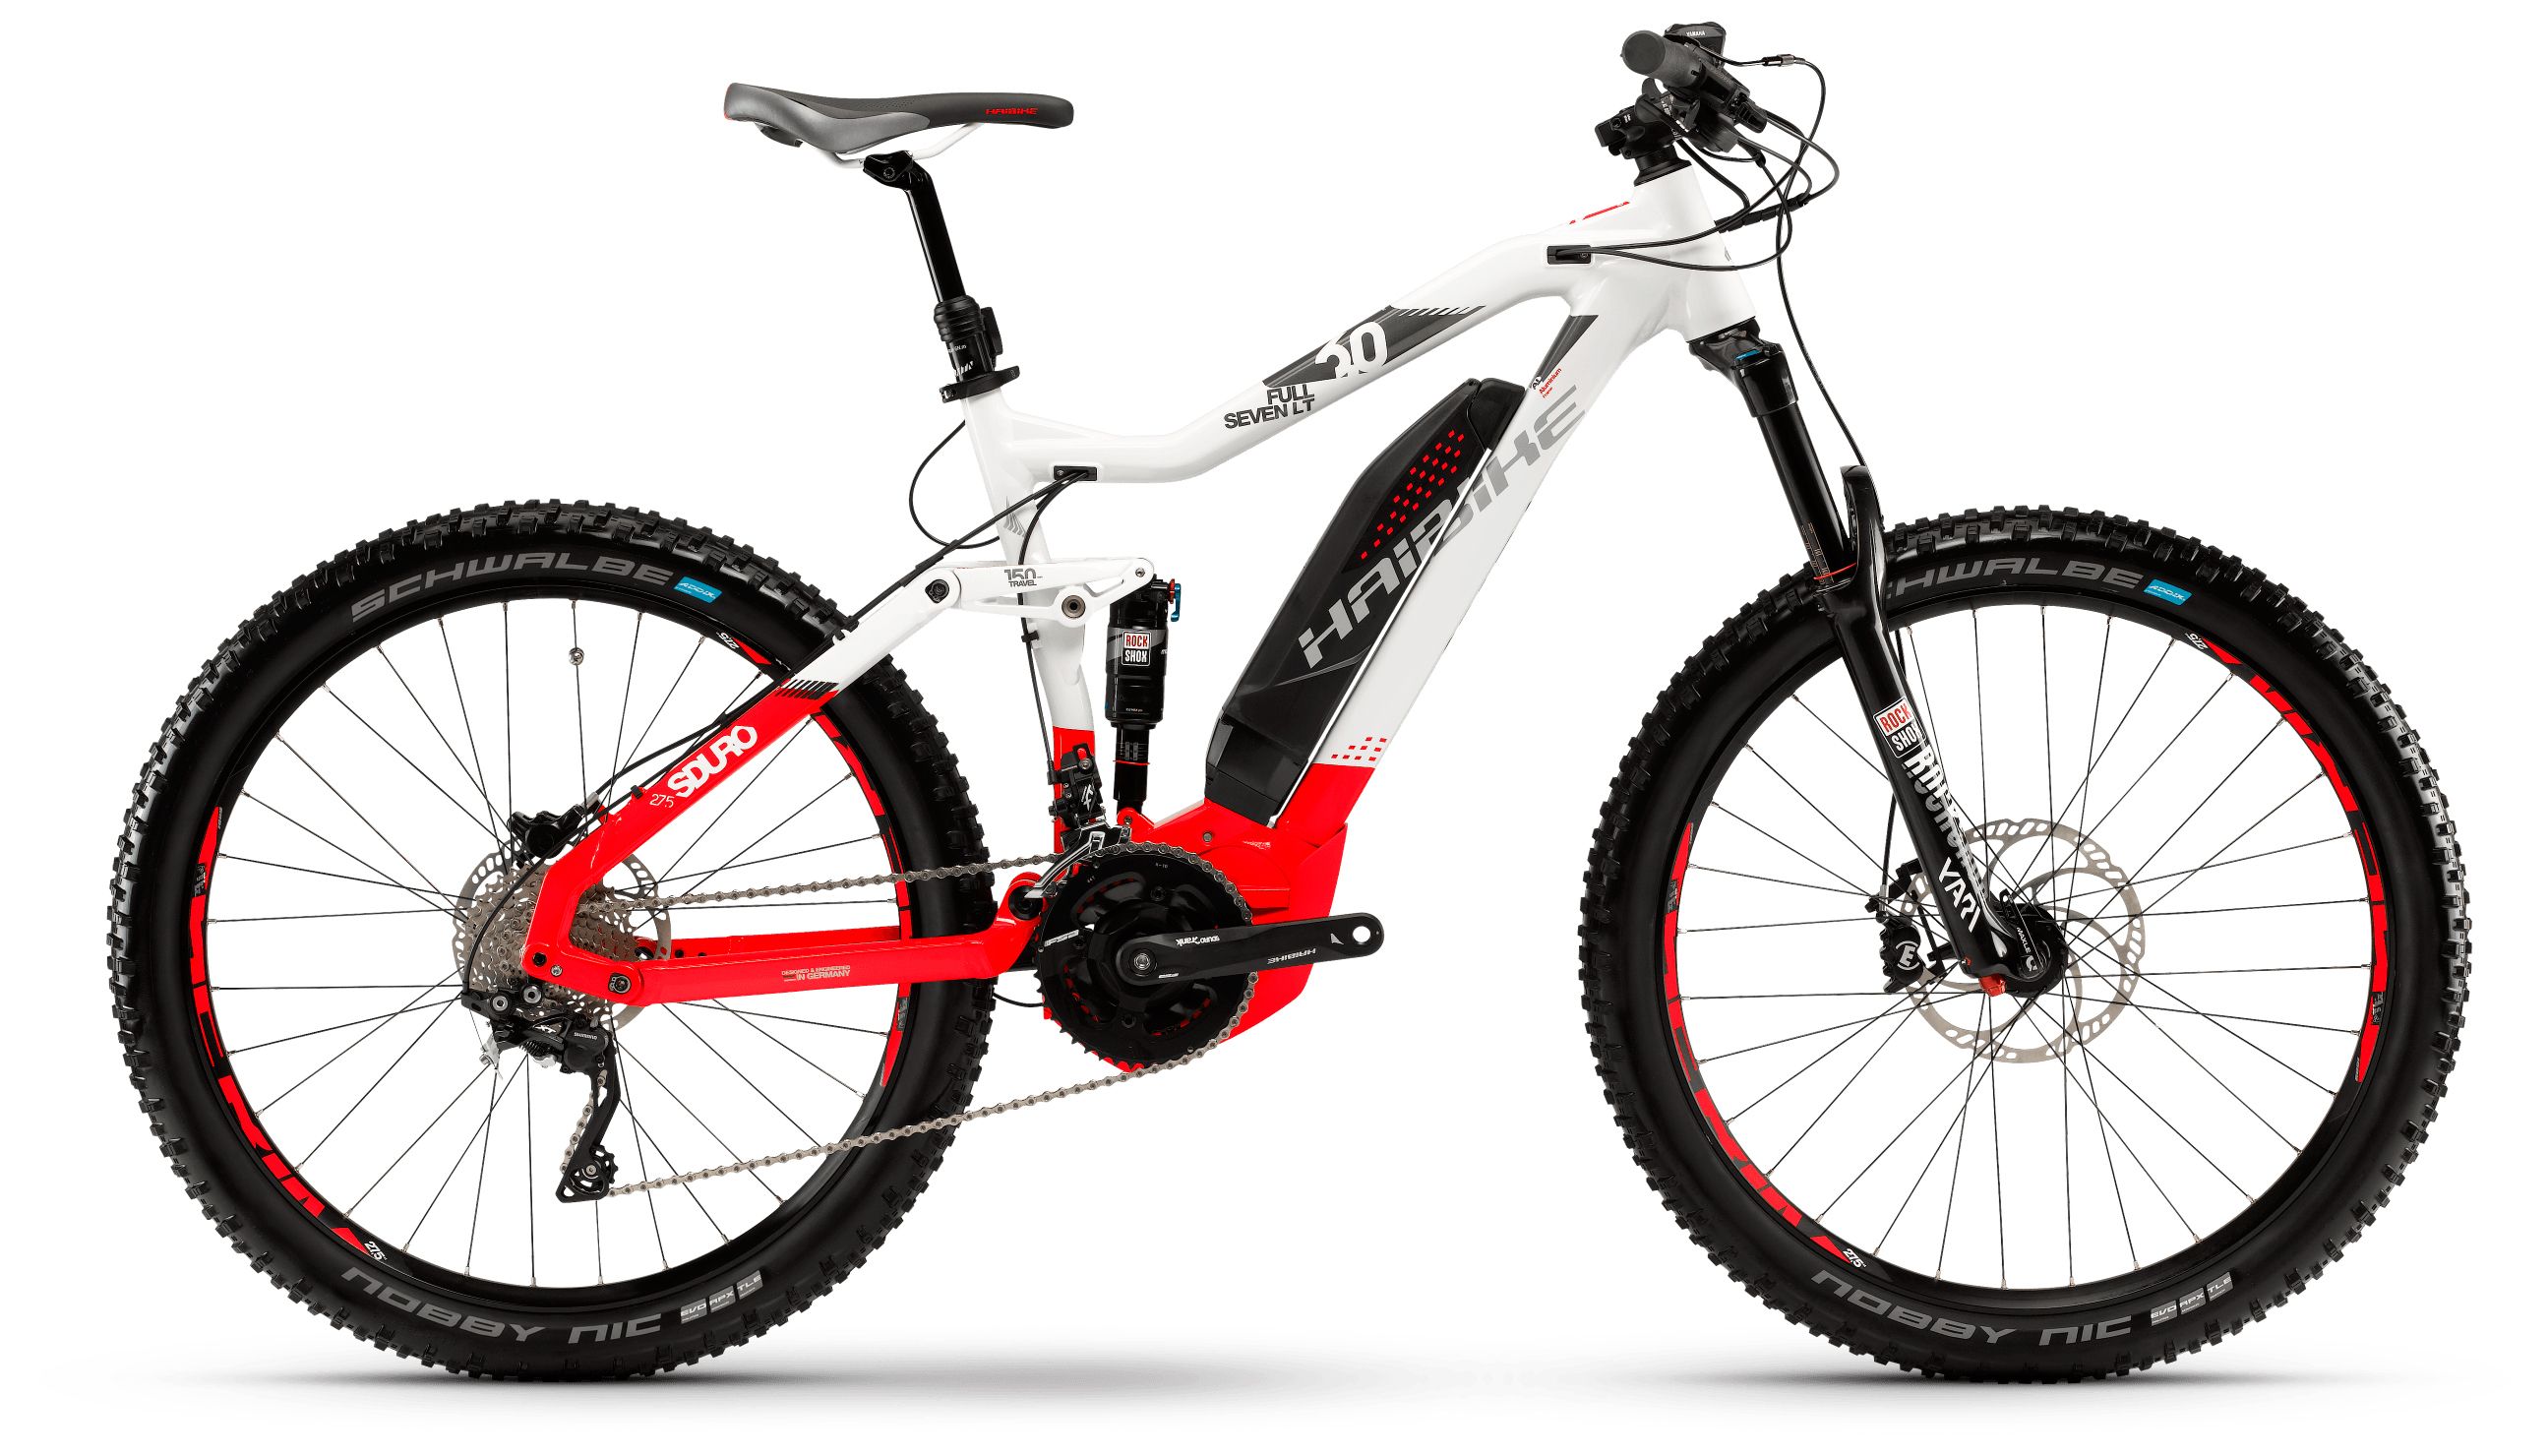  Отзывы о Горном велосипеде Haibike Sduro FullSeven LT 6.0 500Wh 20s XT 2018